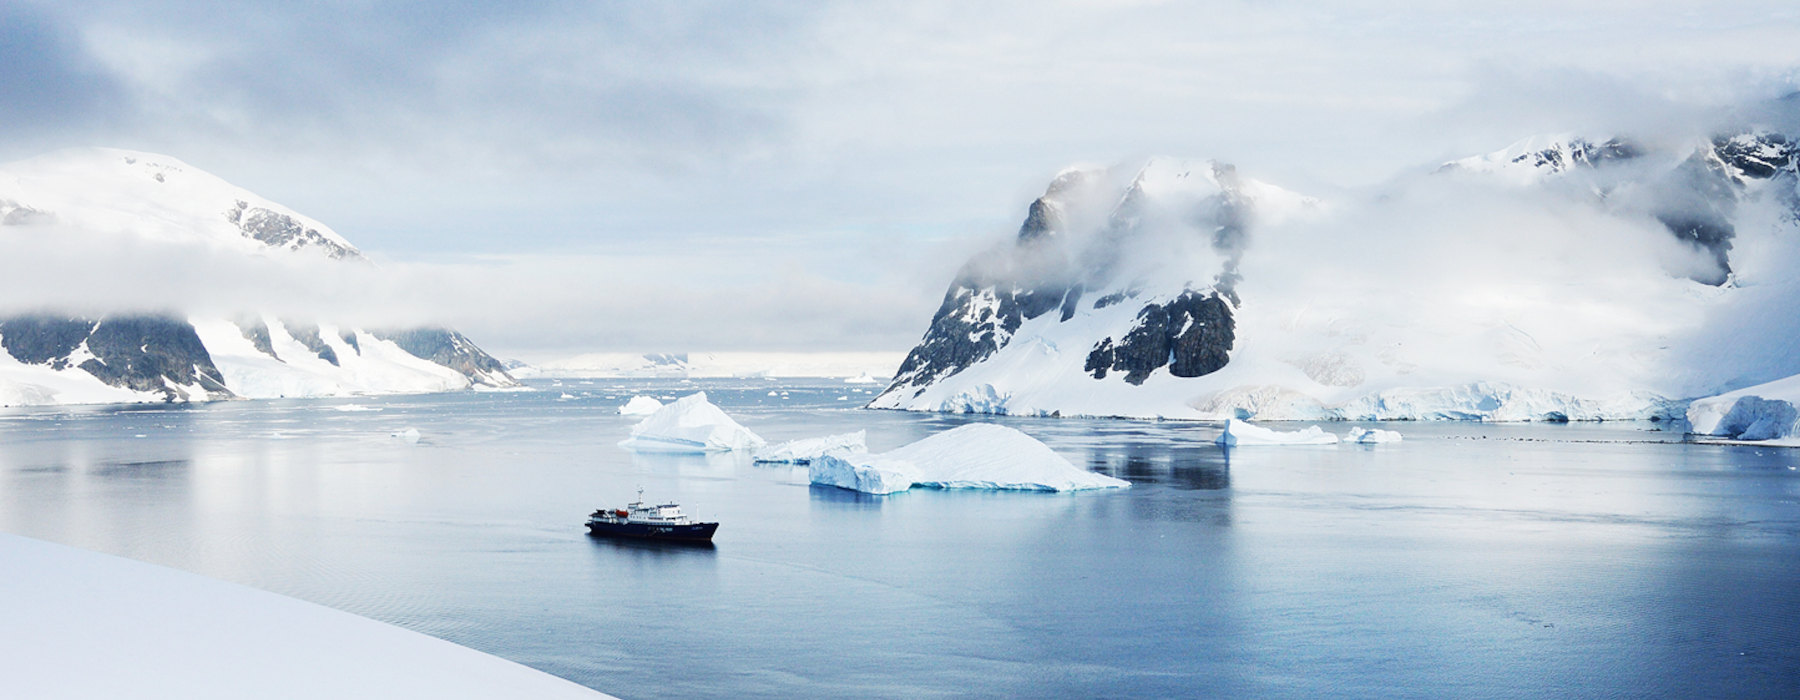 Antarctica<br class="hidden-md hidden-lg" /> Luxury Holidays